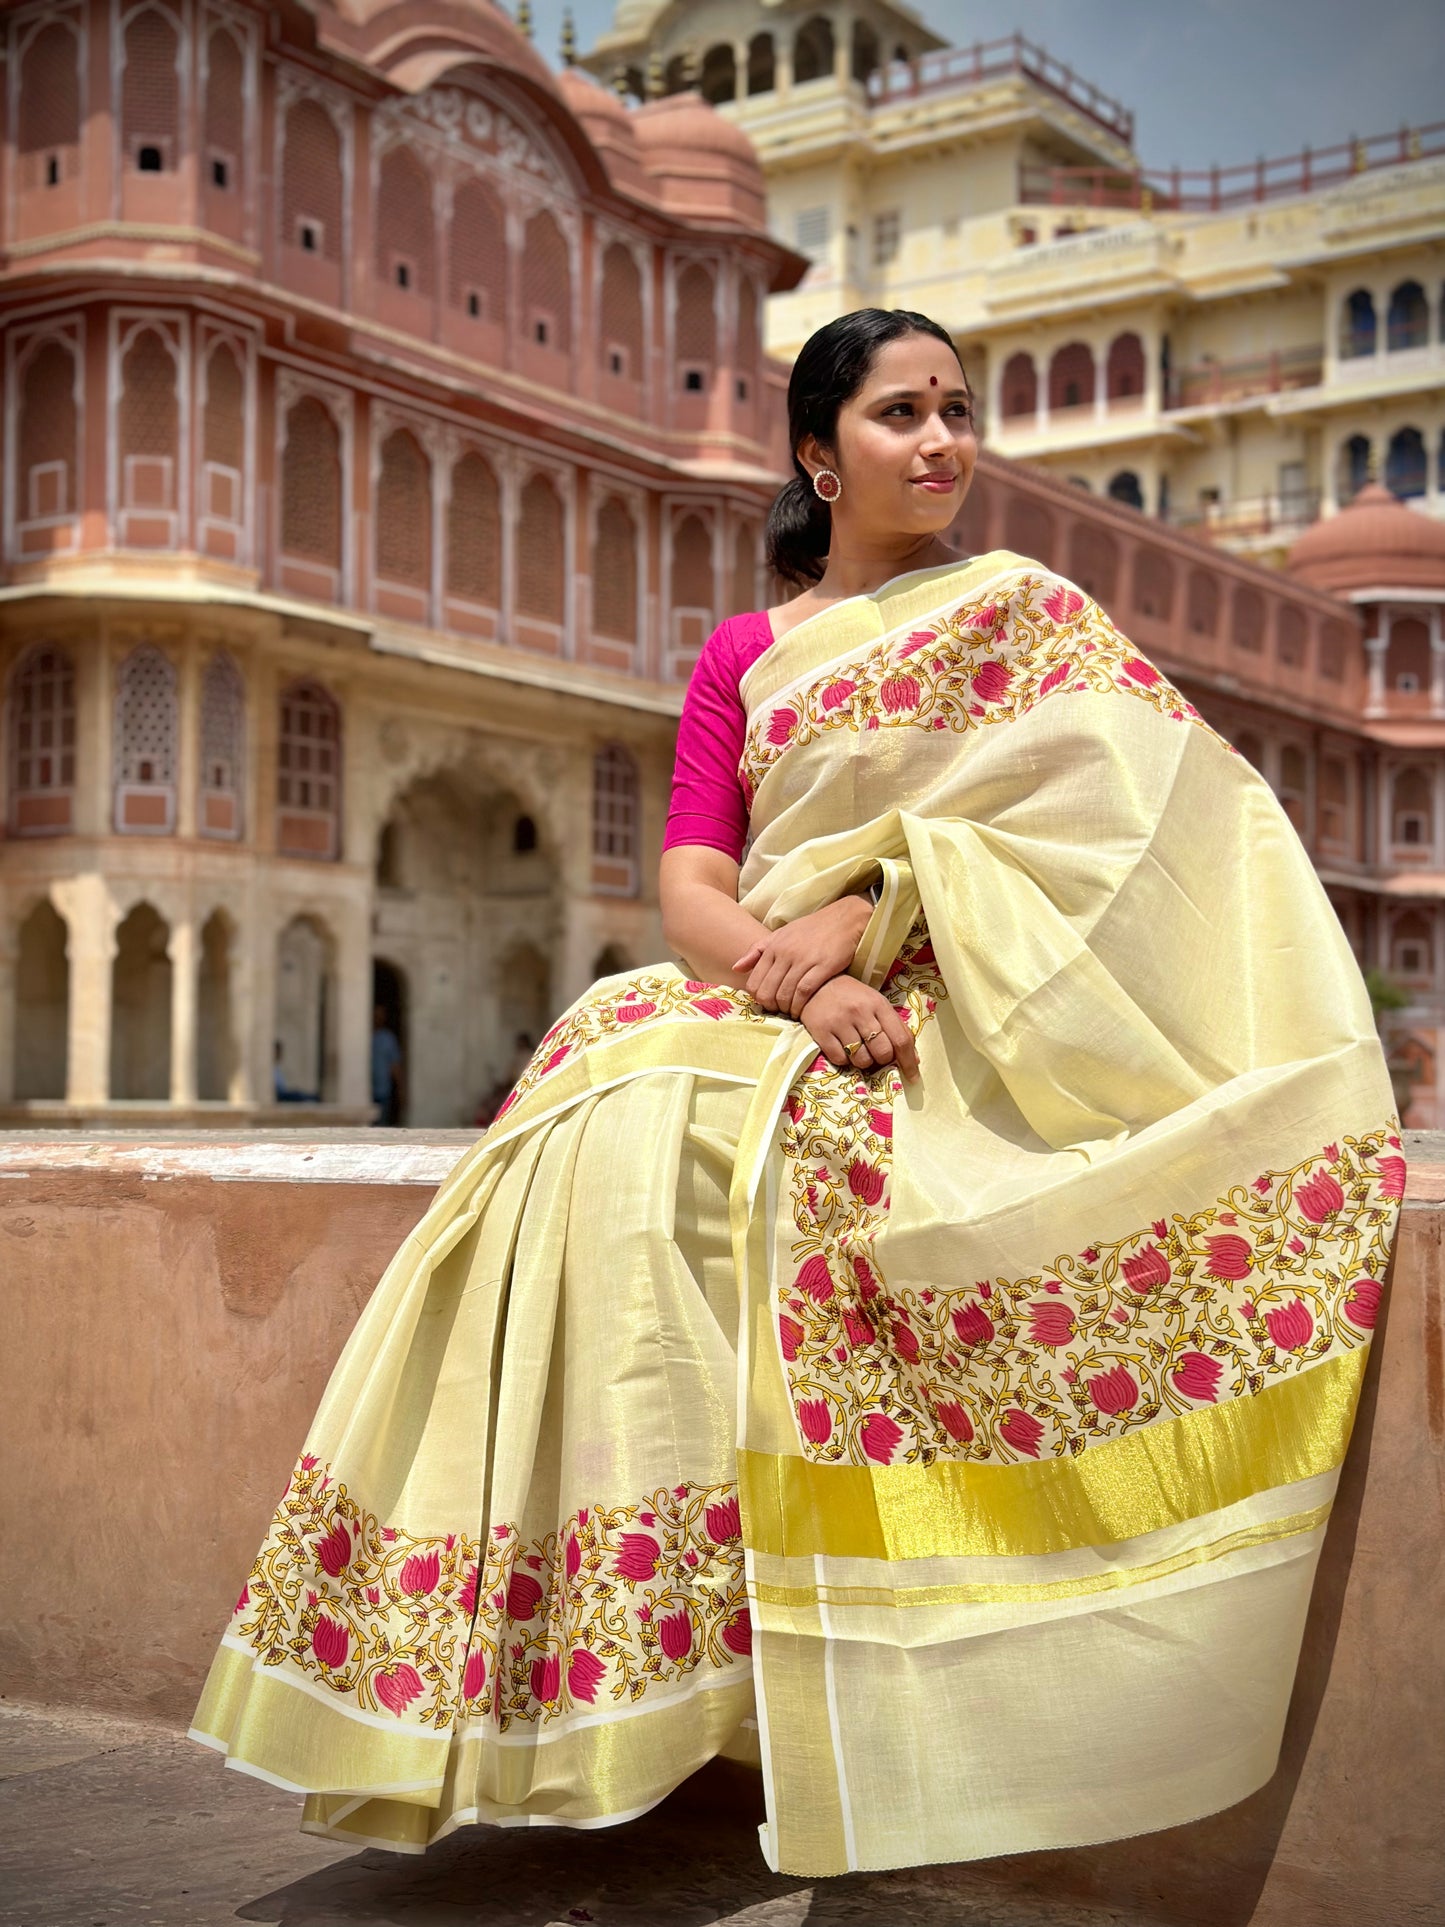 Southloom Jaipur Artisans & Kerala Weavers Collab Tissue Kasavu Saree